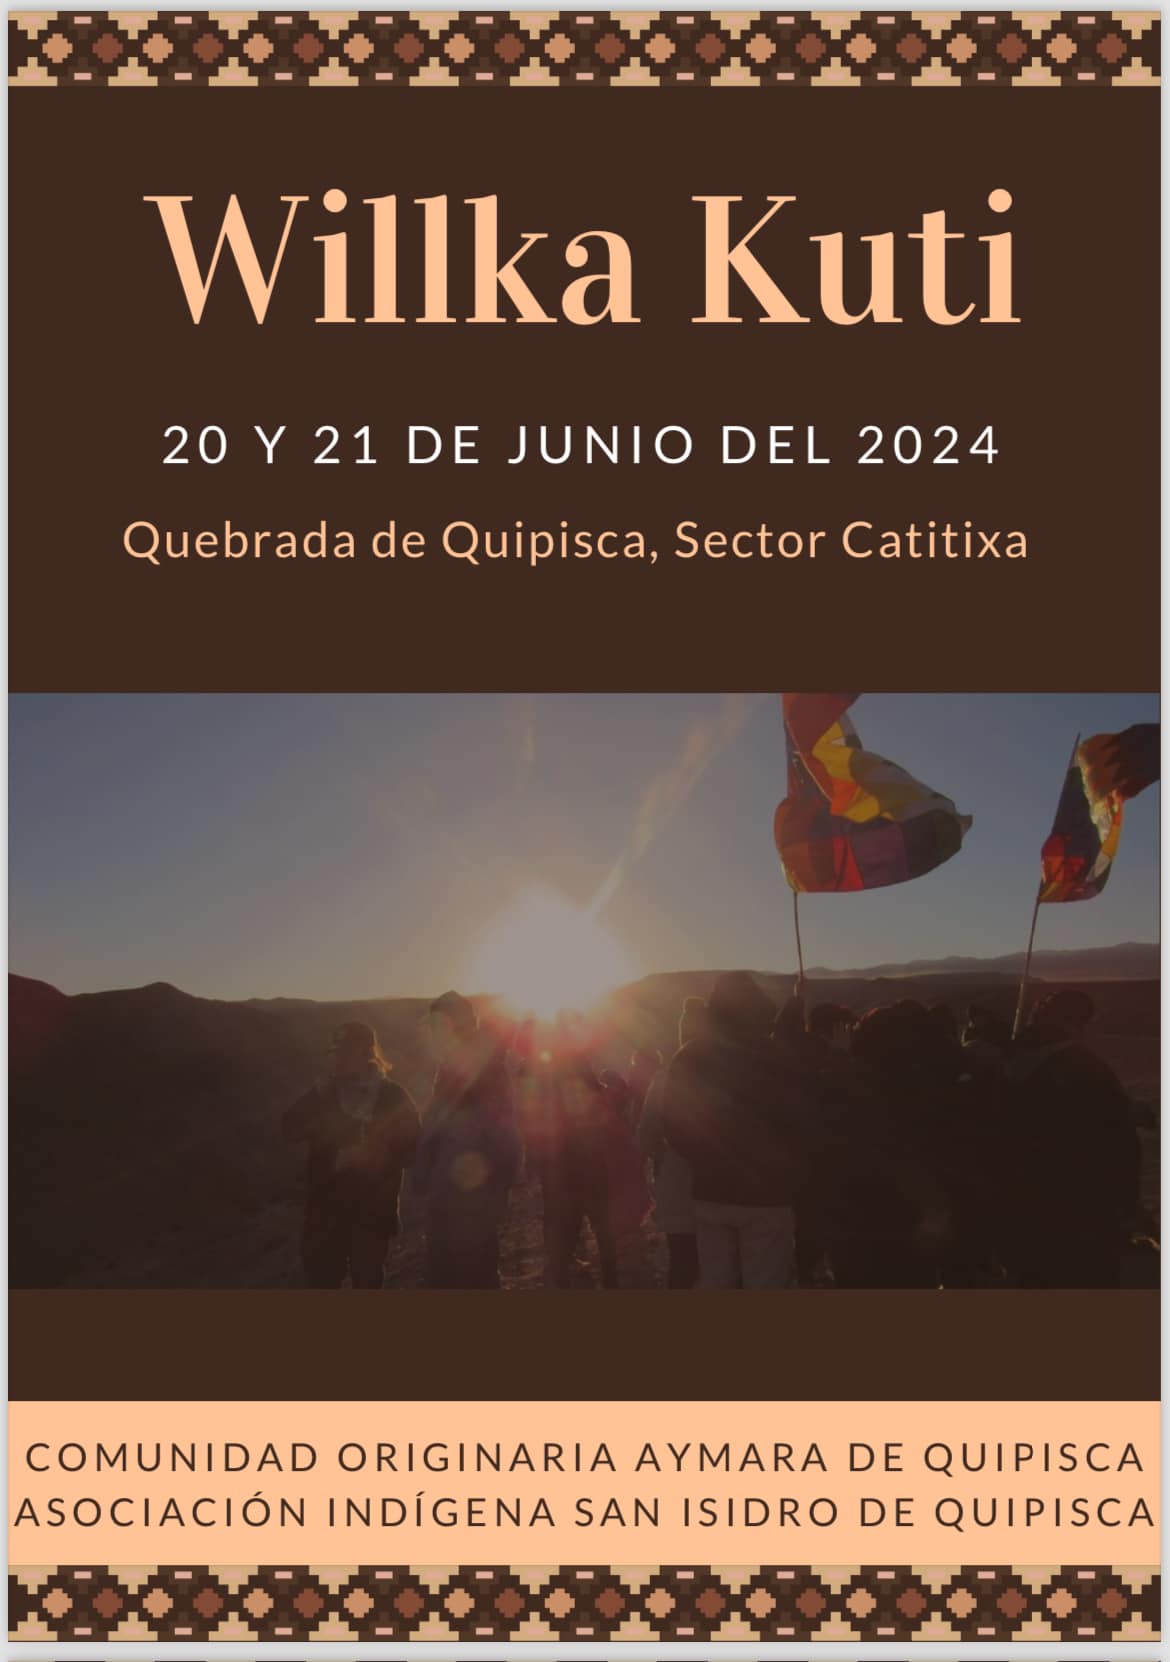 Willka Kuti Quipisca